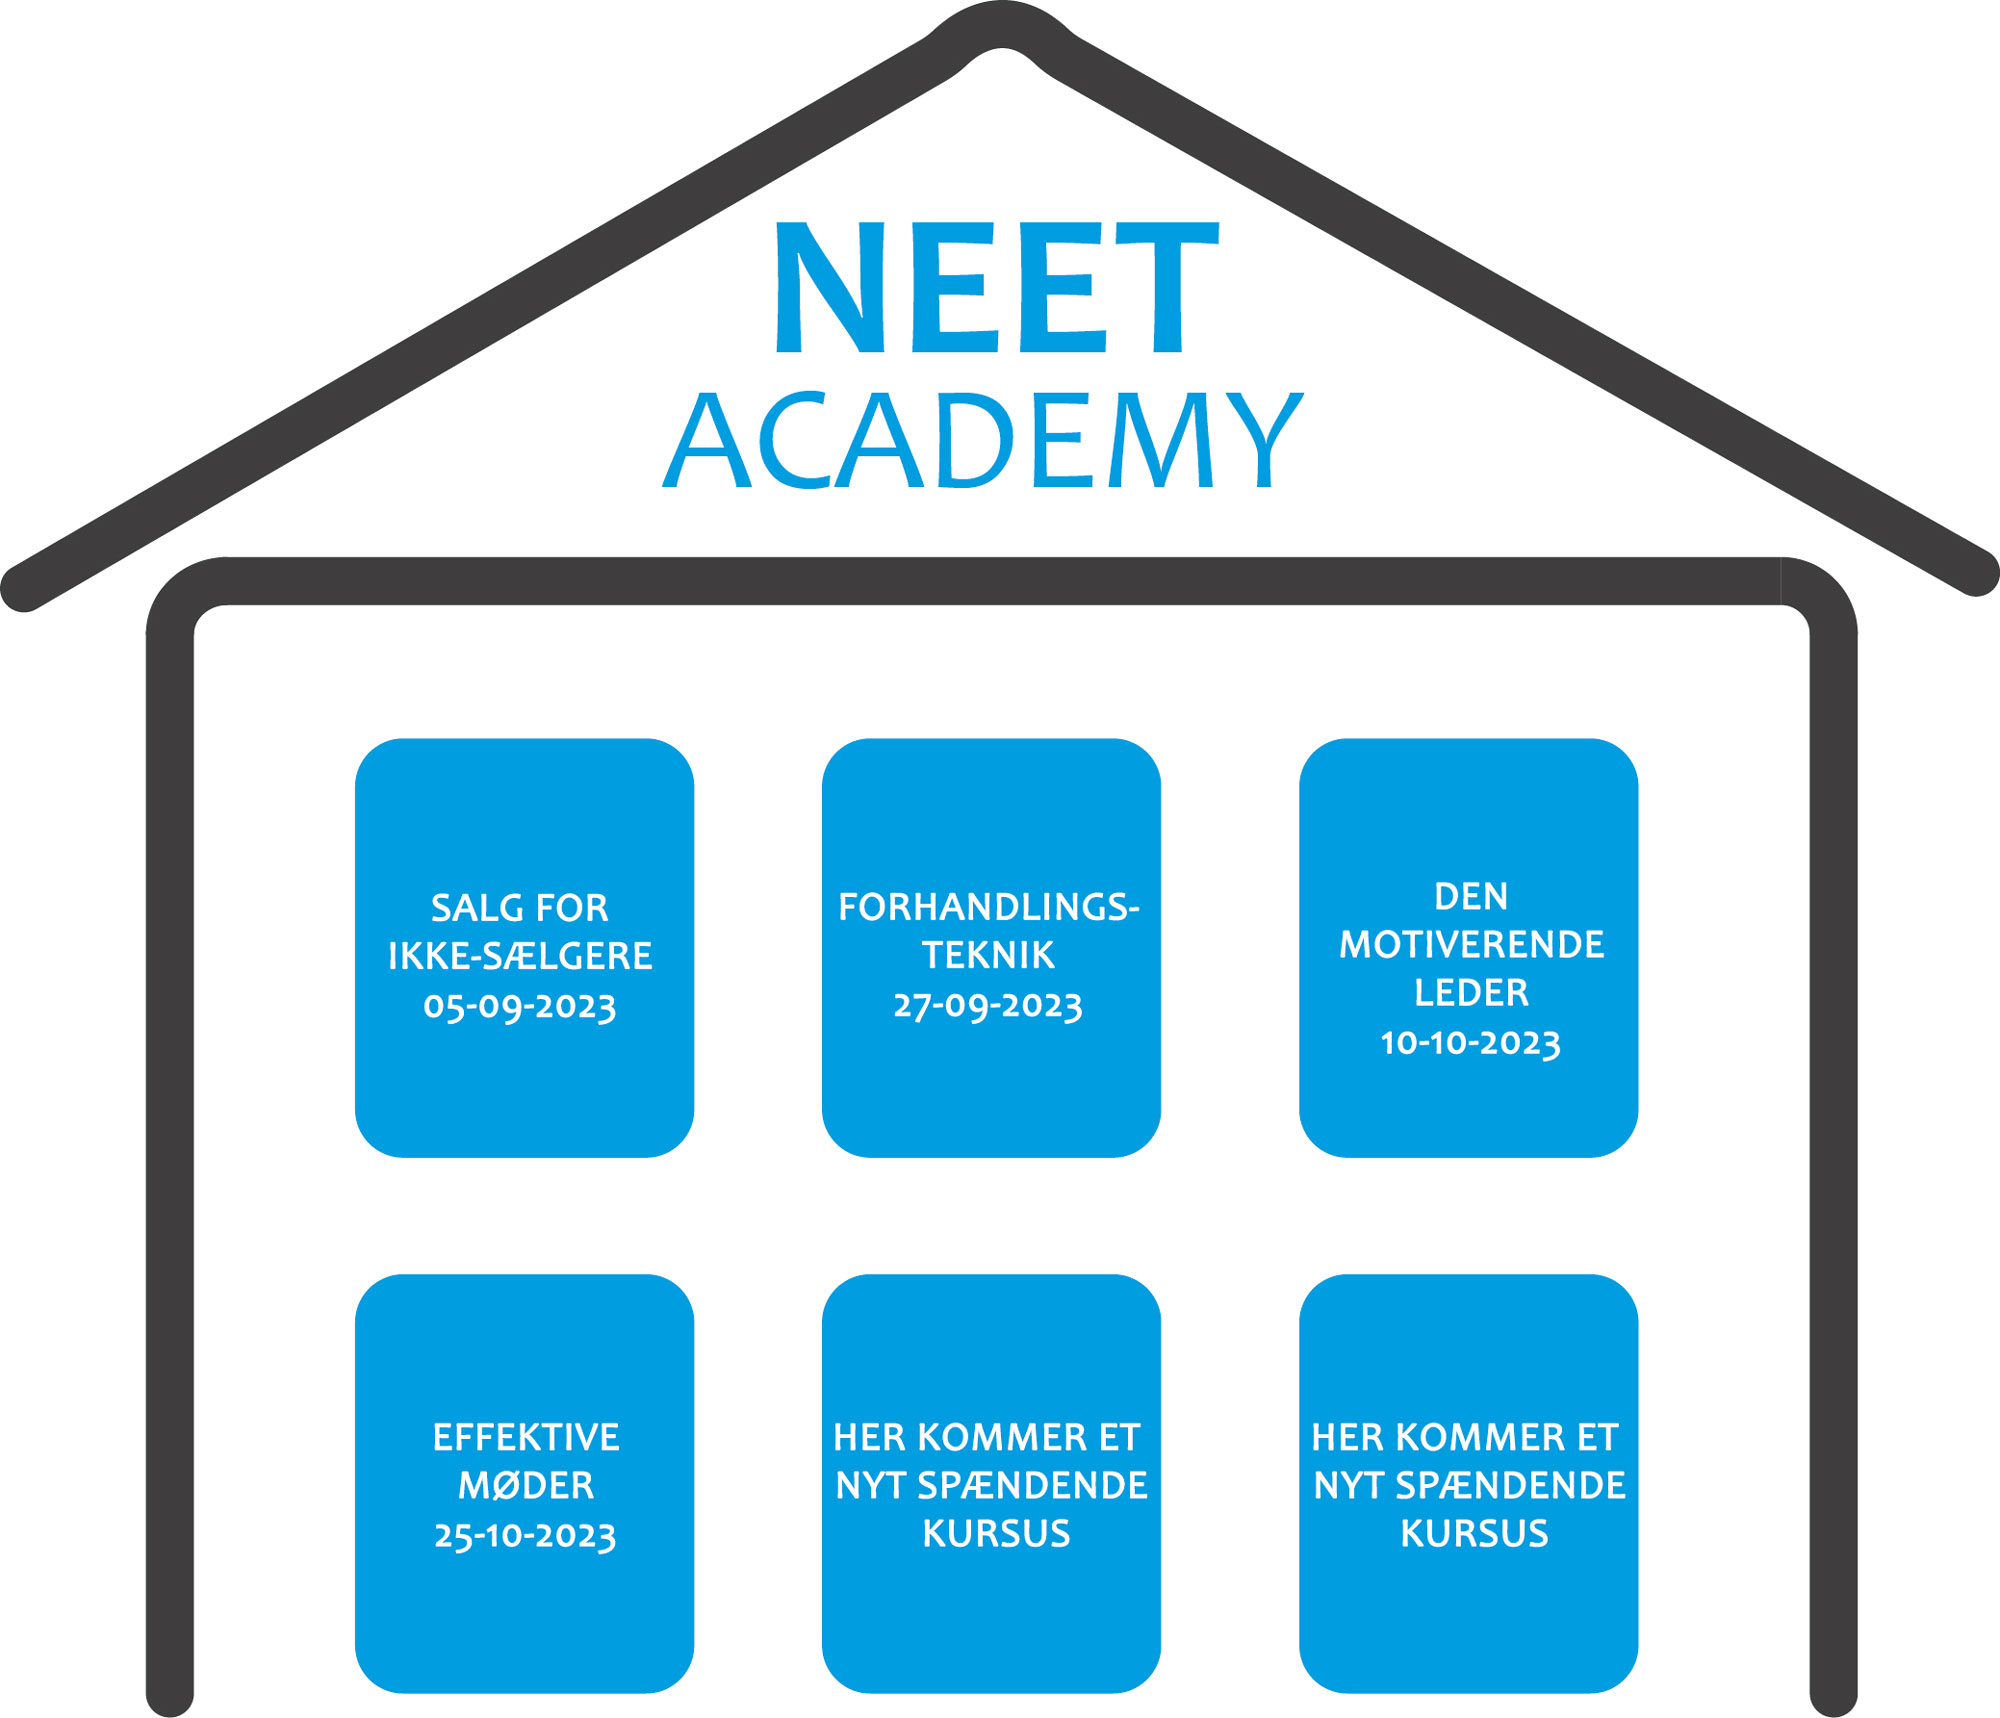 NEET Academy 4 kurser